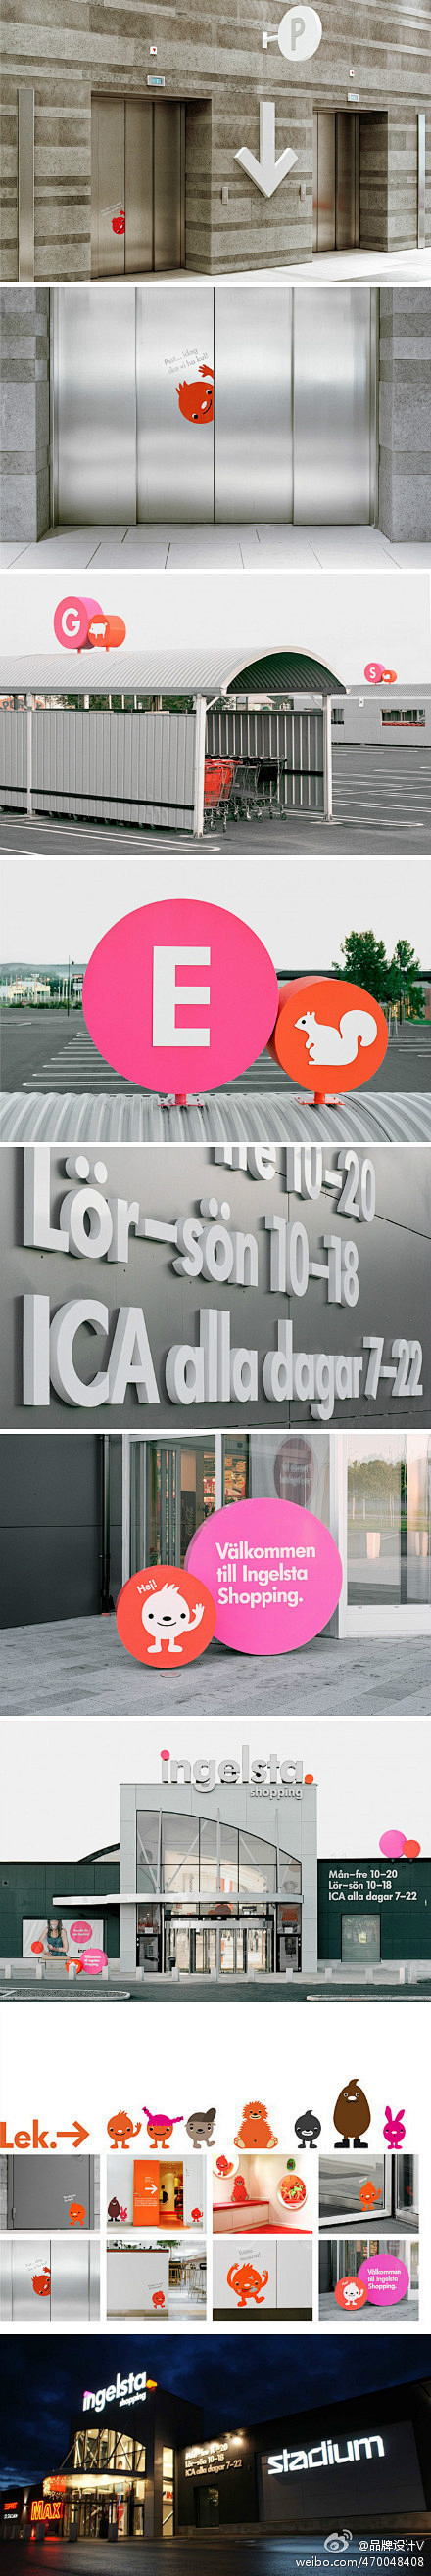 Ingelsta购物中心标识系统